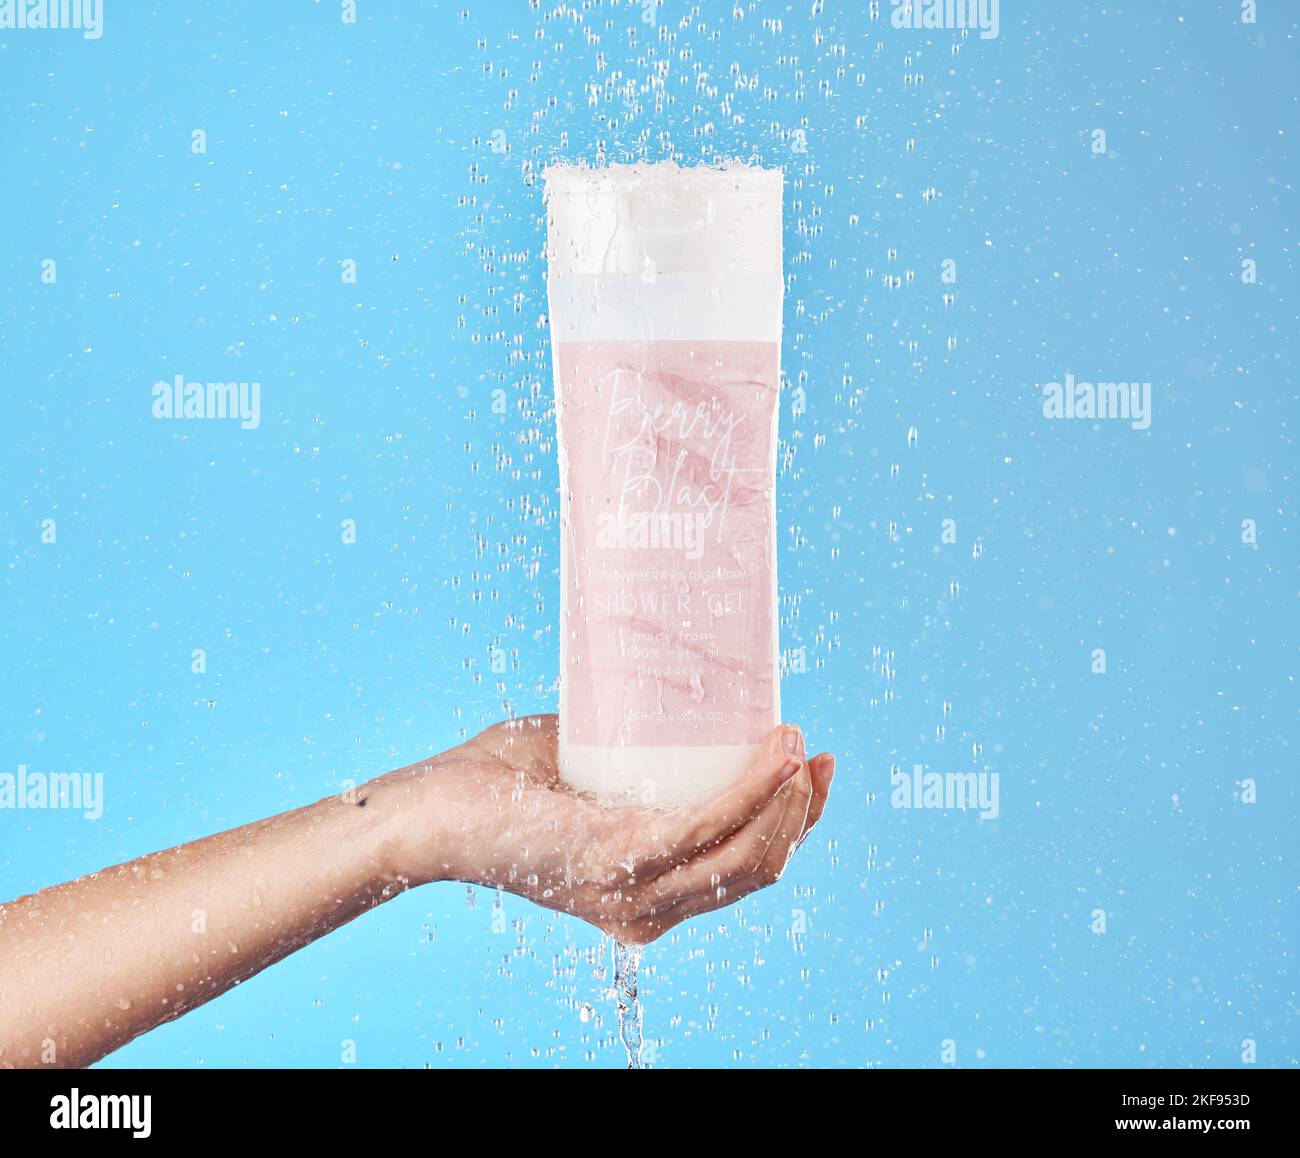 Soin de la peau, produit de savon et bouteille pour le nettoyage de gel douche, le bien-être et l'hygiène du corps avec de l'eau. Contenant en plastique pour la main pour la santé et Banque D'Images